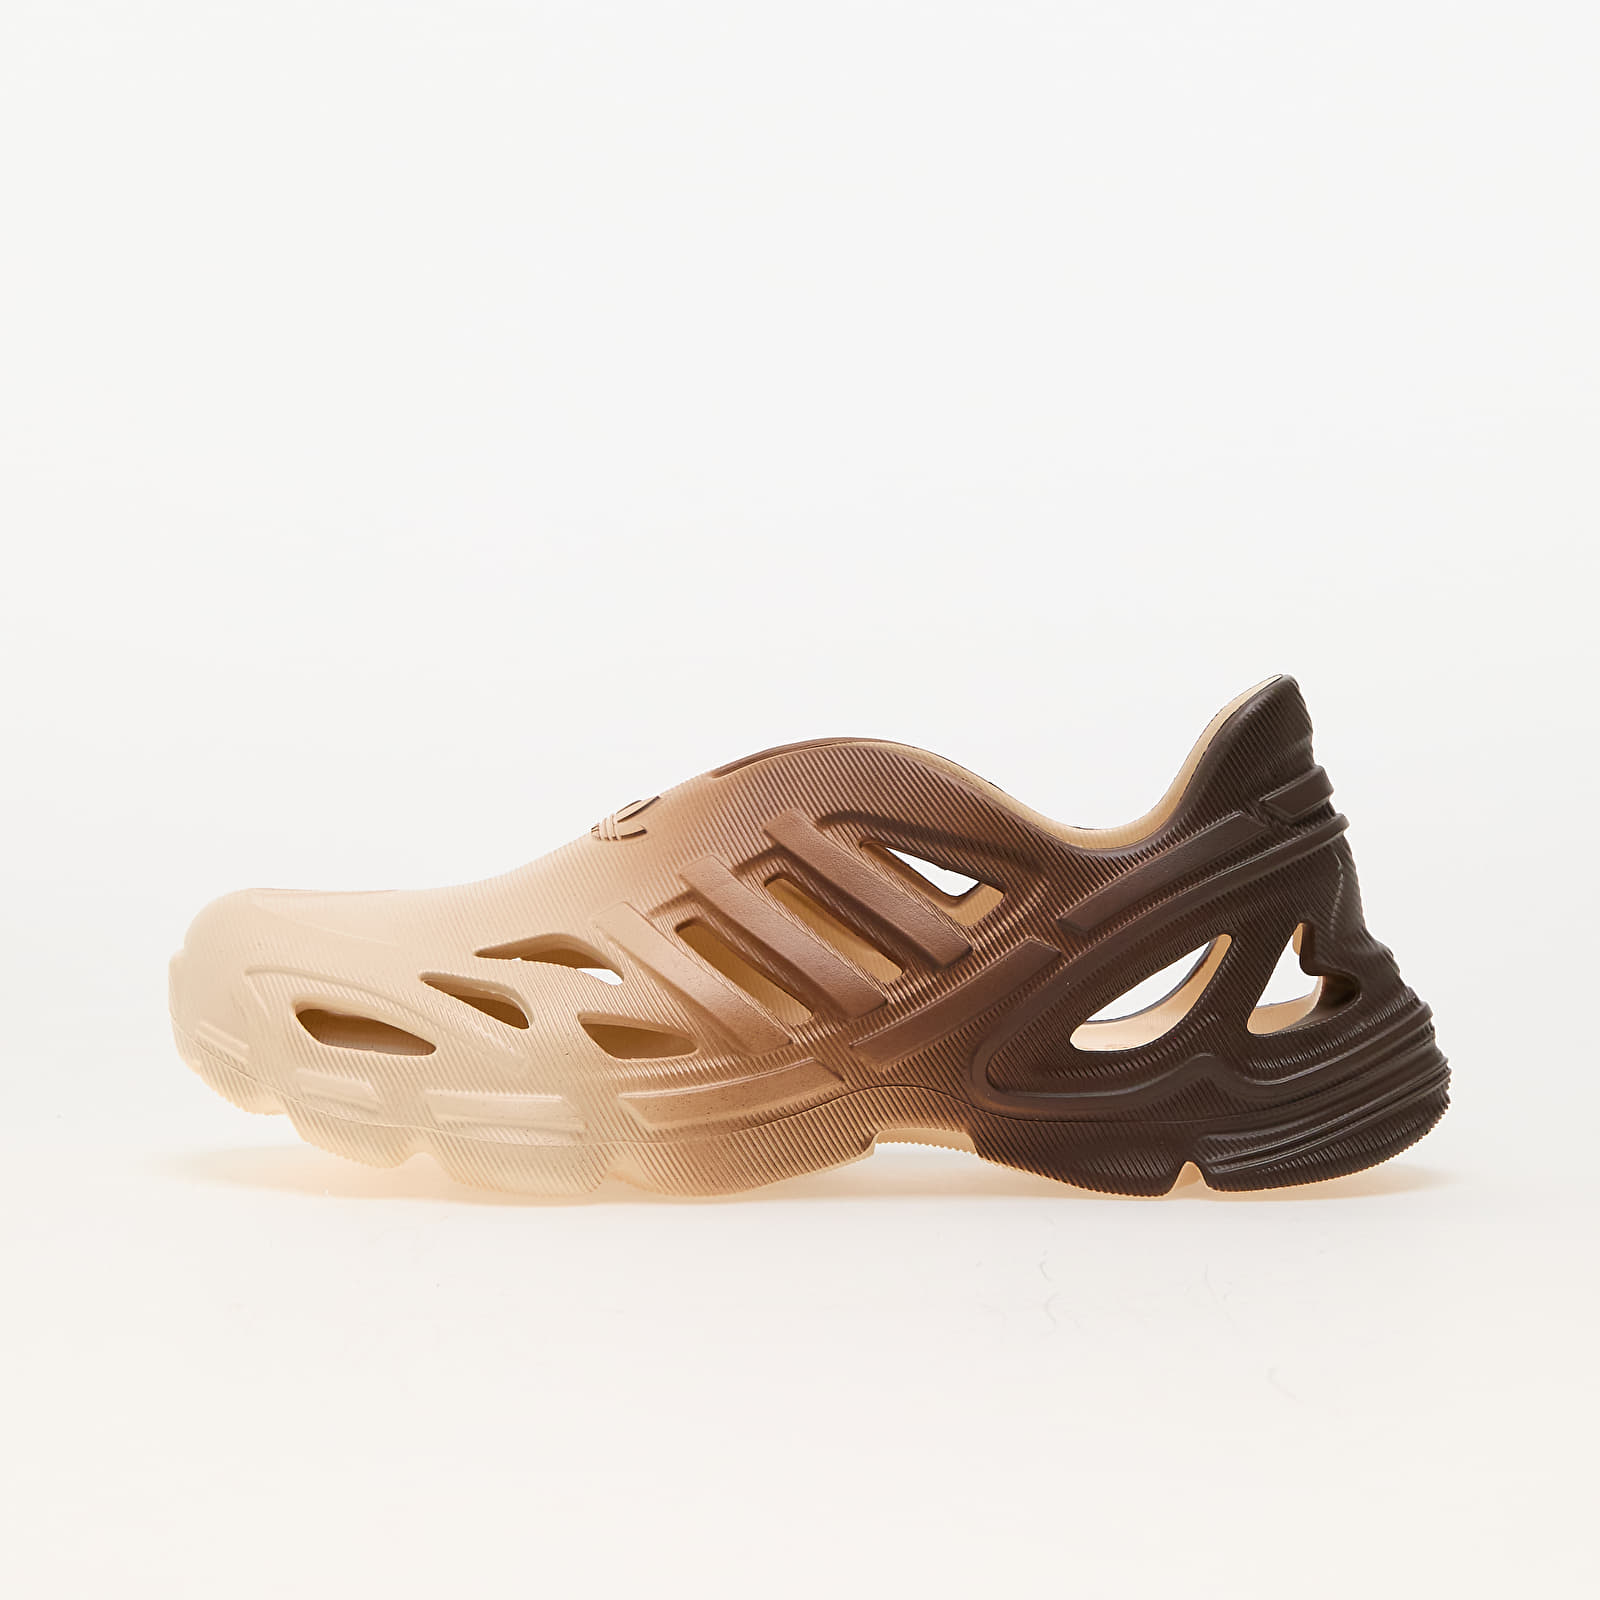 Men's shoes adidas Adifom Supernova Sand Strata/ Sand Strata/ Earth Strata